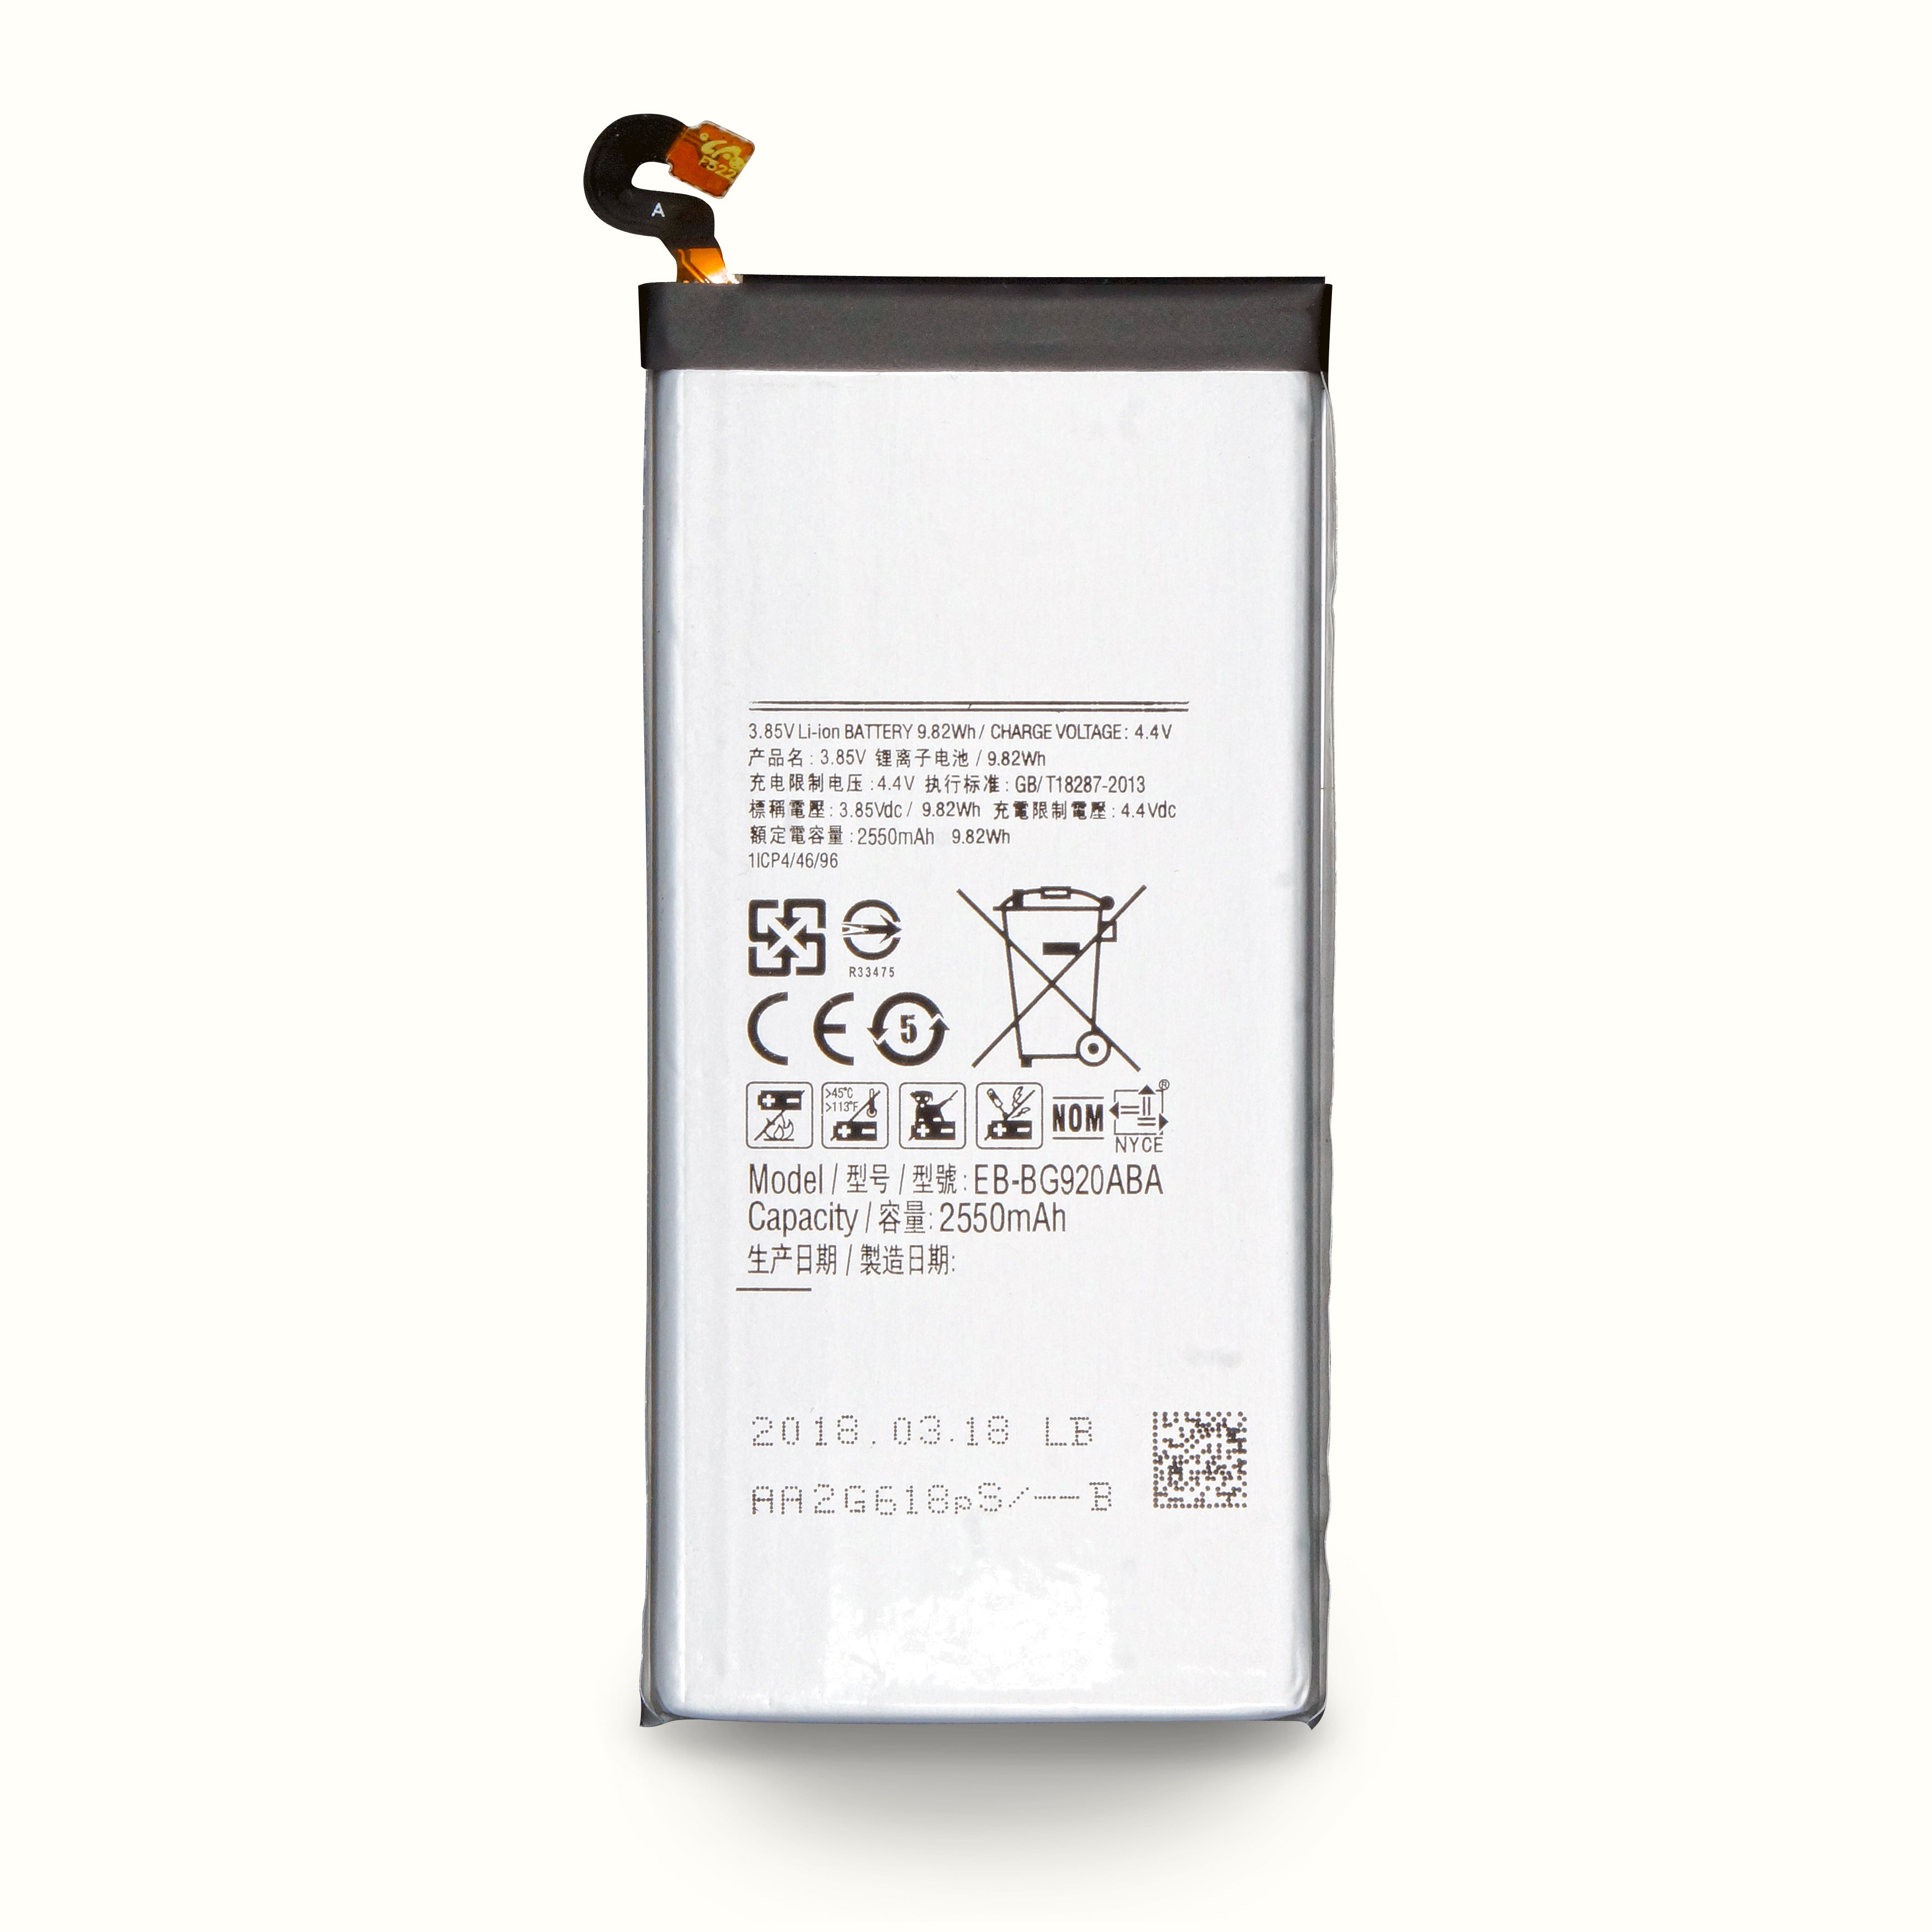 Samsung Galaxy S6 Battery Repair kit, Capacity 2550mAh